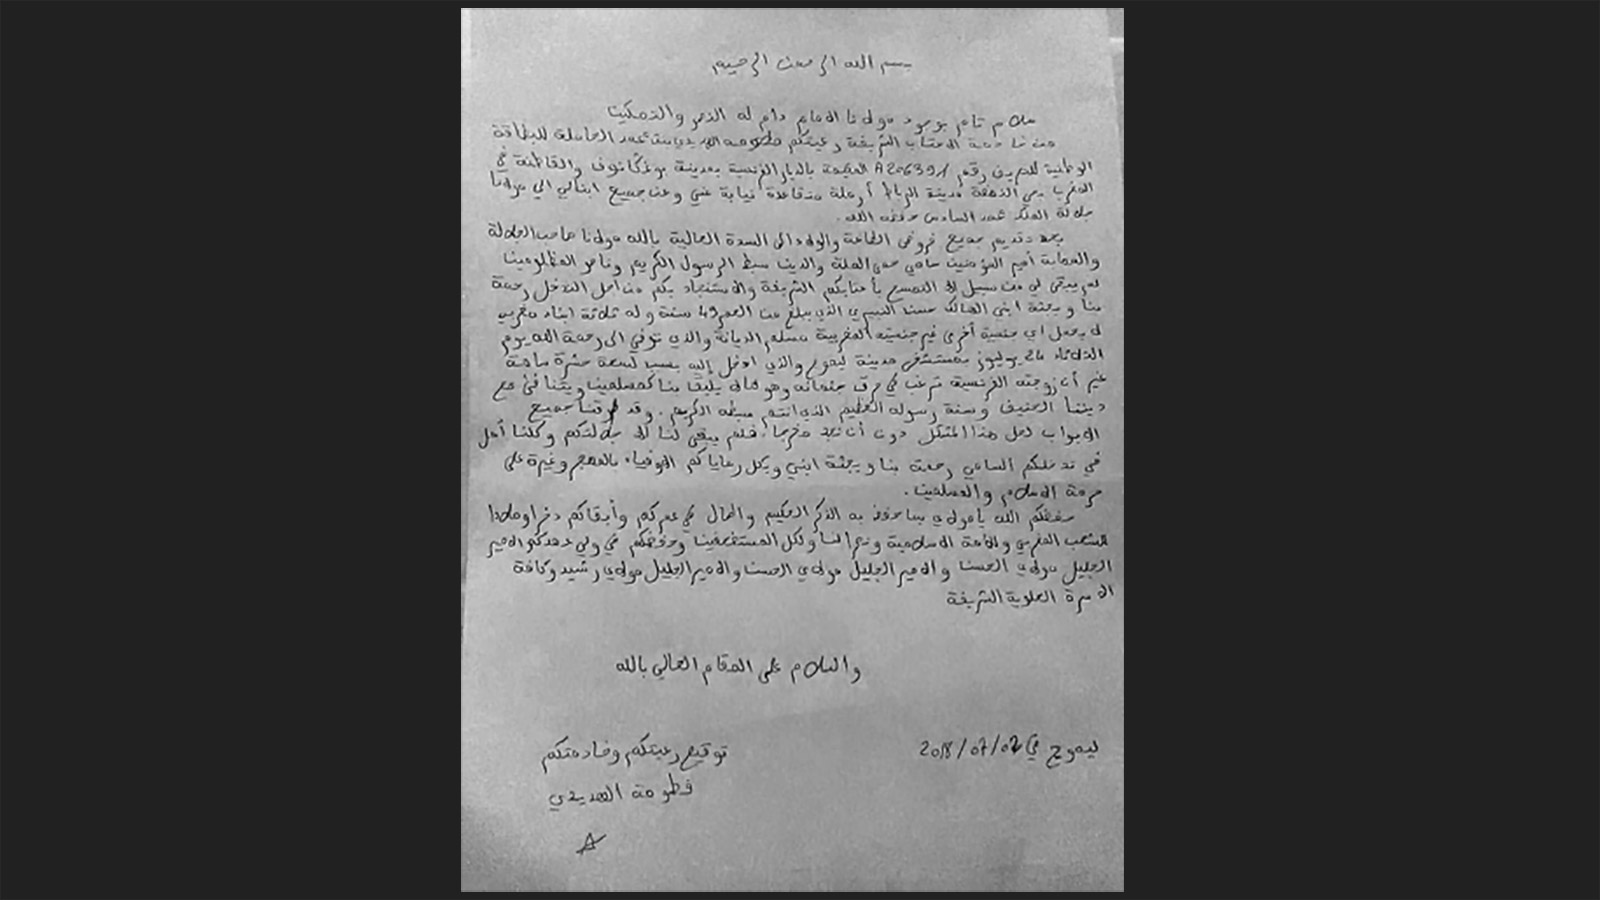 رسالة كانت أم حسن النبيري قد وجهتها إلى ملك المغرب محمد السادس للتدخل لمنع إحراق جثة ابنها حسن (مواقع التواصل الاجتماعي)